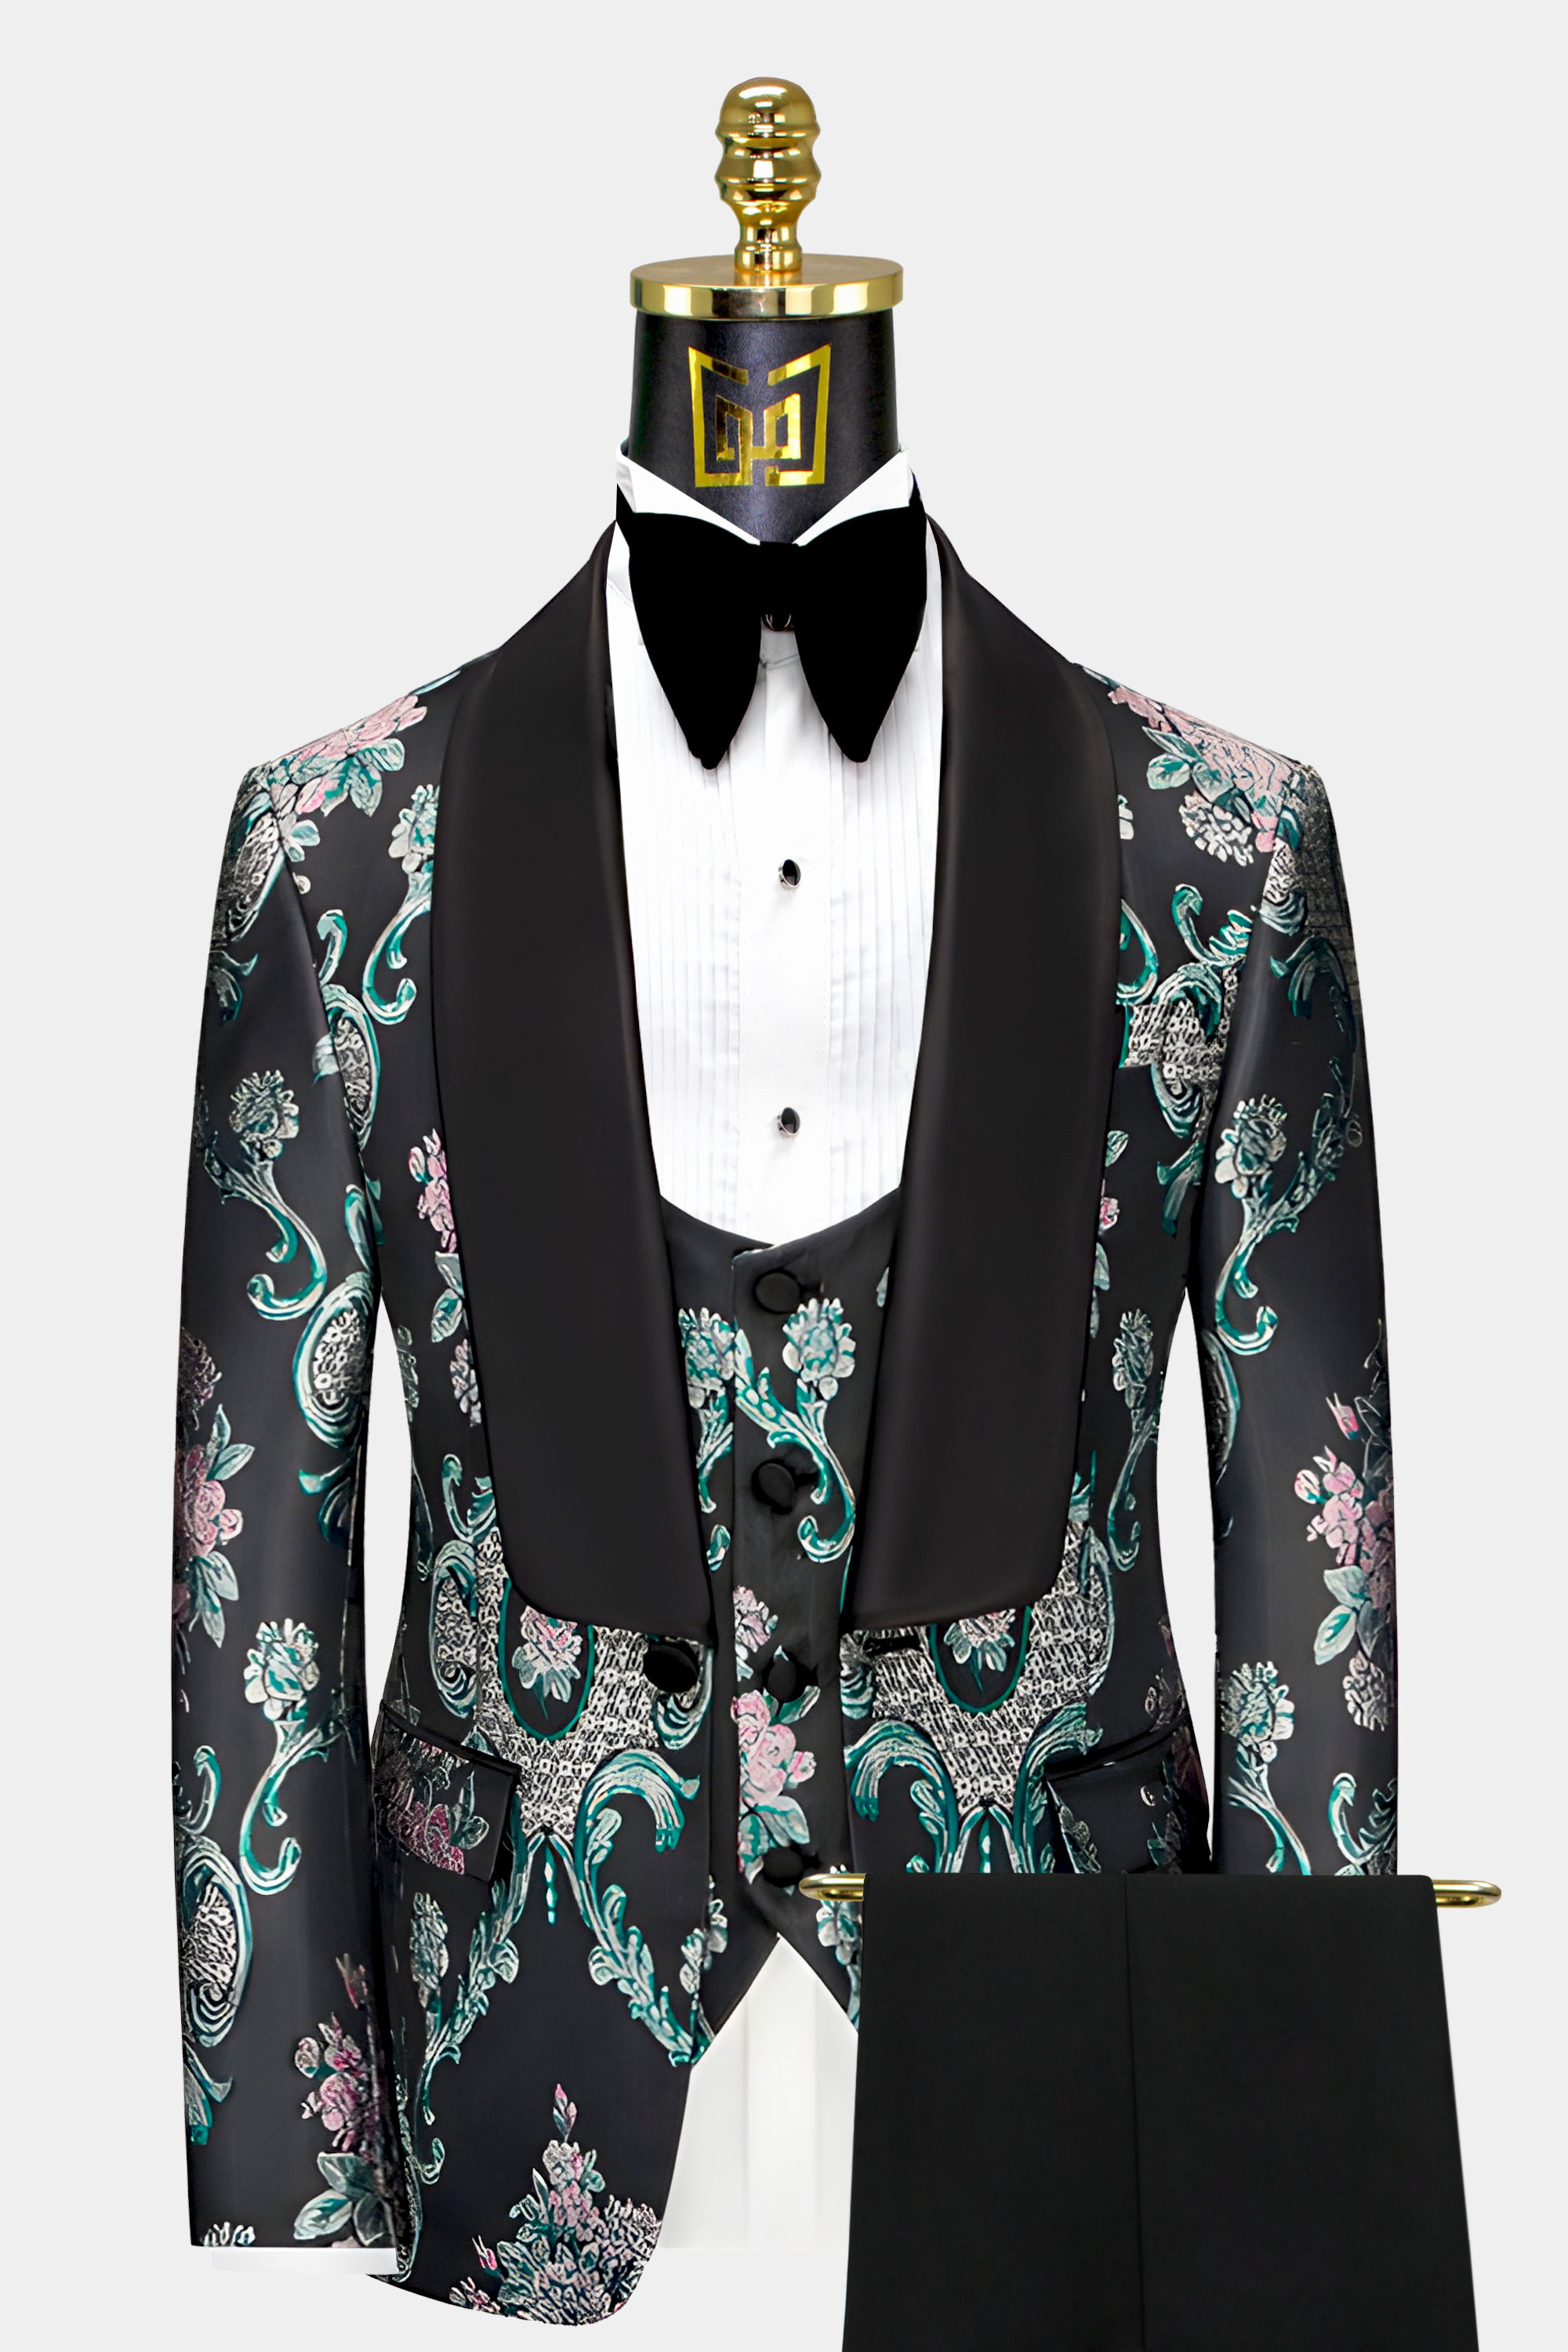 Black-and-Green-Tuxedo-Prom-Groom-Wedding-Suit-For-Men-from-Gentlemansguru.com